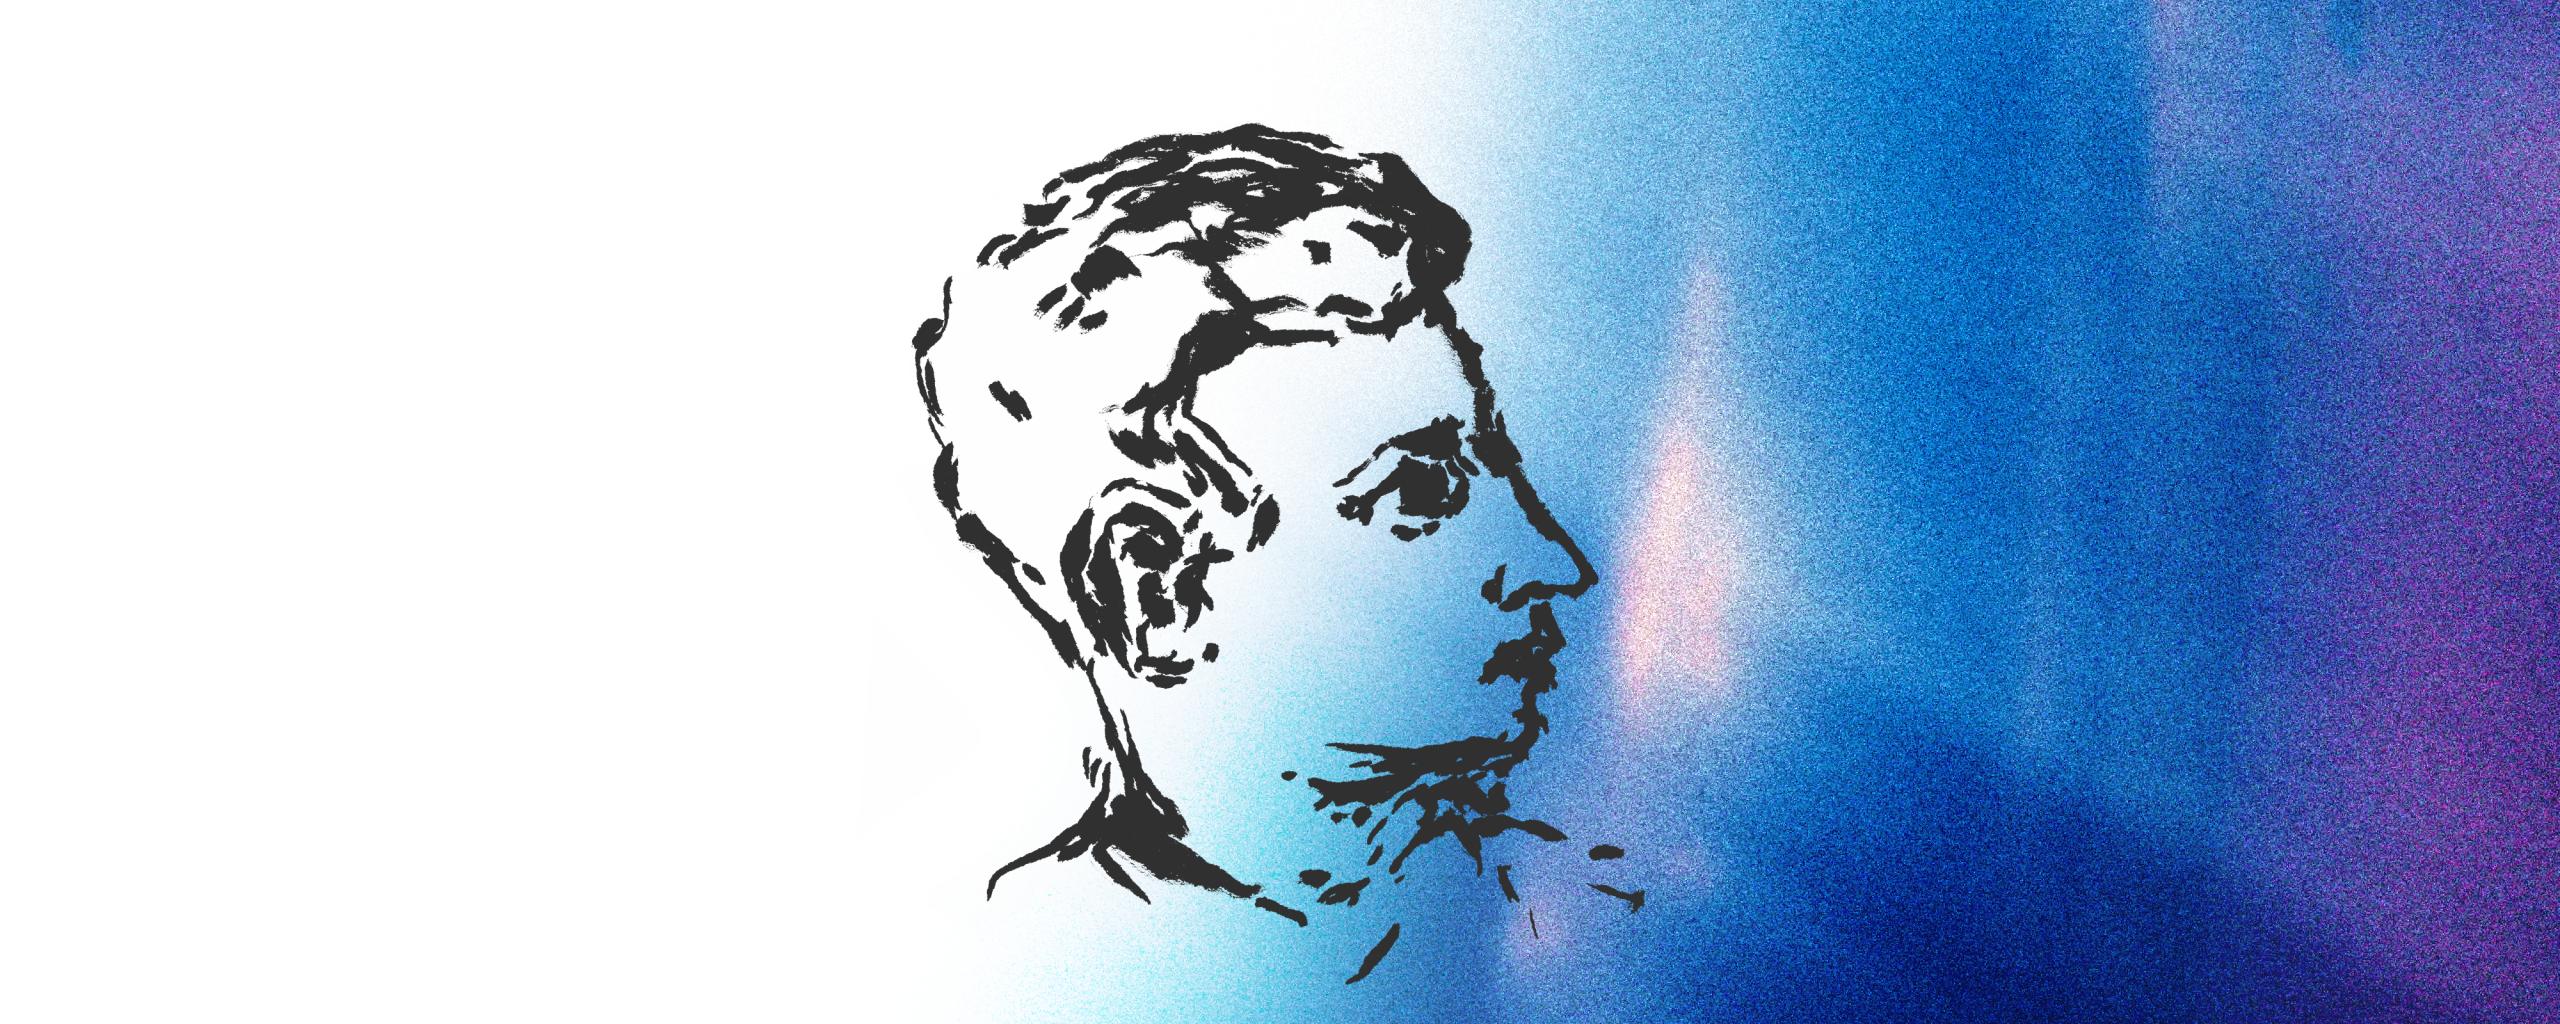 Auf einem blauweißem Hintergrund in Ombré-Optik ist mit schwarzer Tusche ein Mann im Seitenprofil gezeichnet.